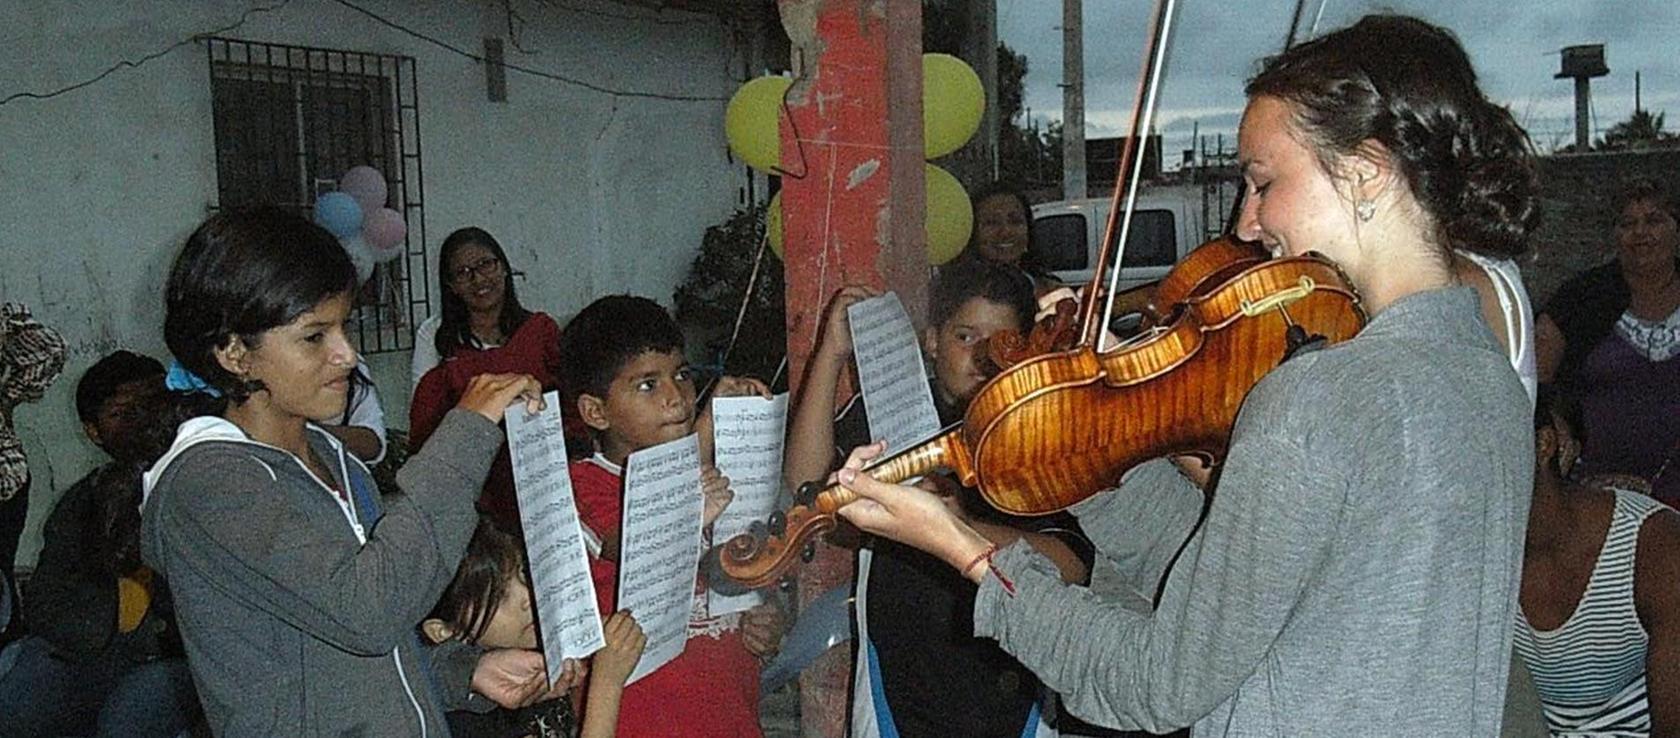 Freude an der Musik mit Kindern in Ecuador geteilt